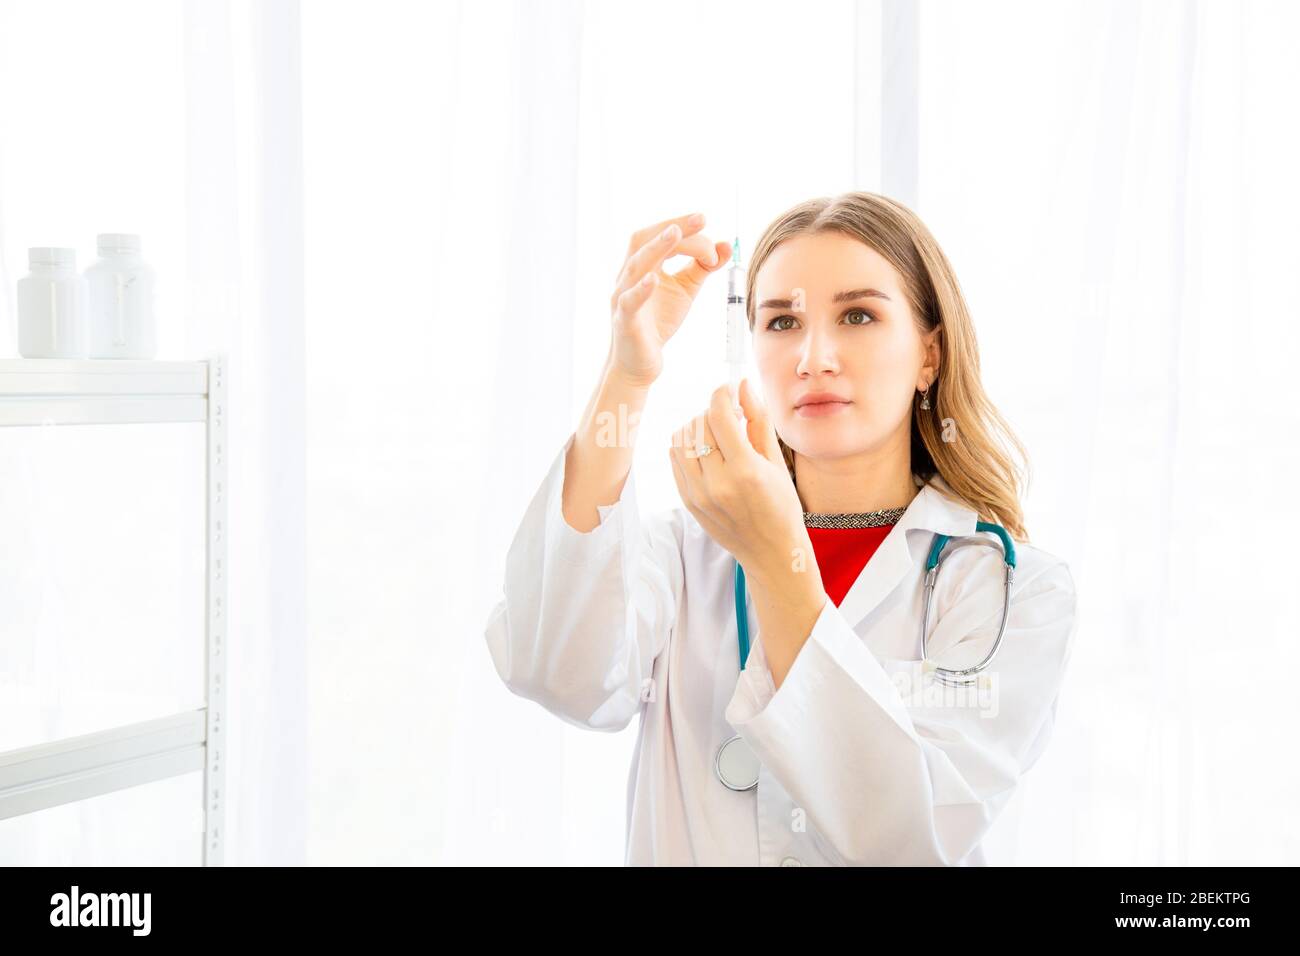 La femme médecin prépare la seringue pour l'injection du patient dans la salle d'examen, toile de fond de rideaux blancs dans l'hôpital ou la clinique. Banque D'Images